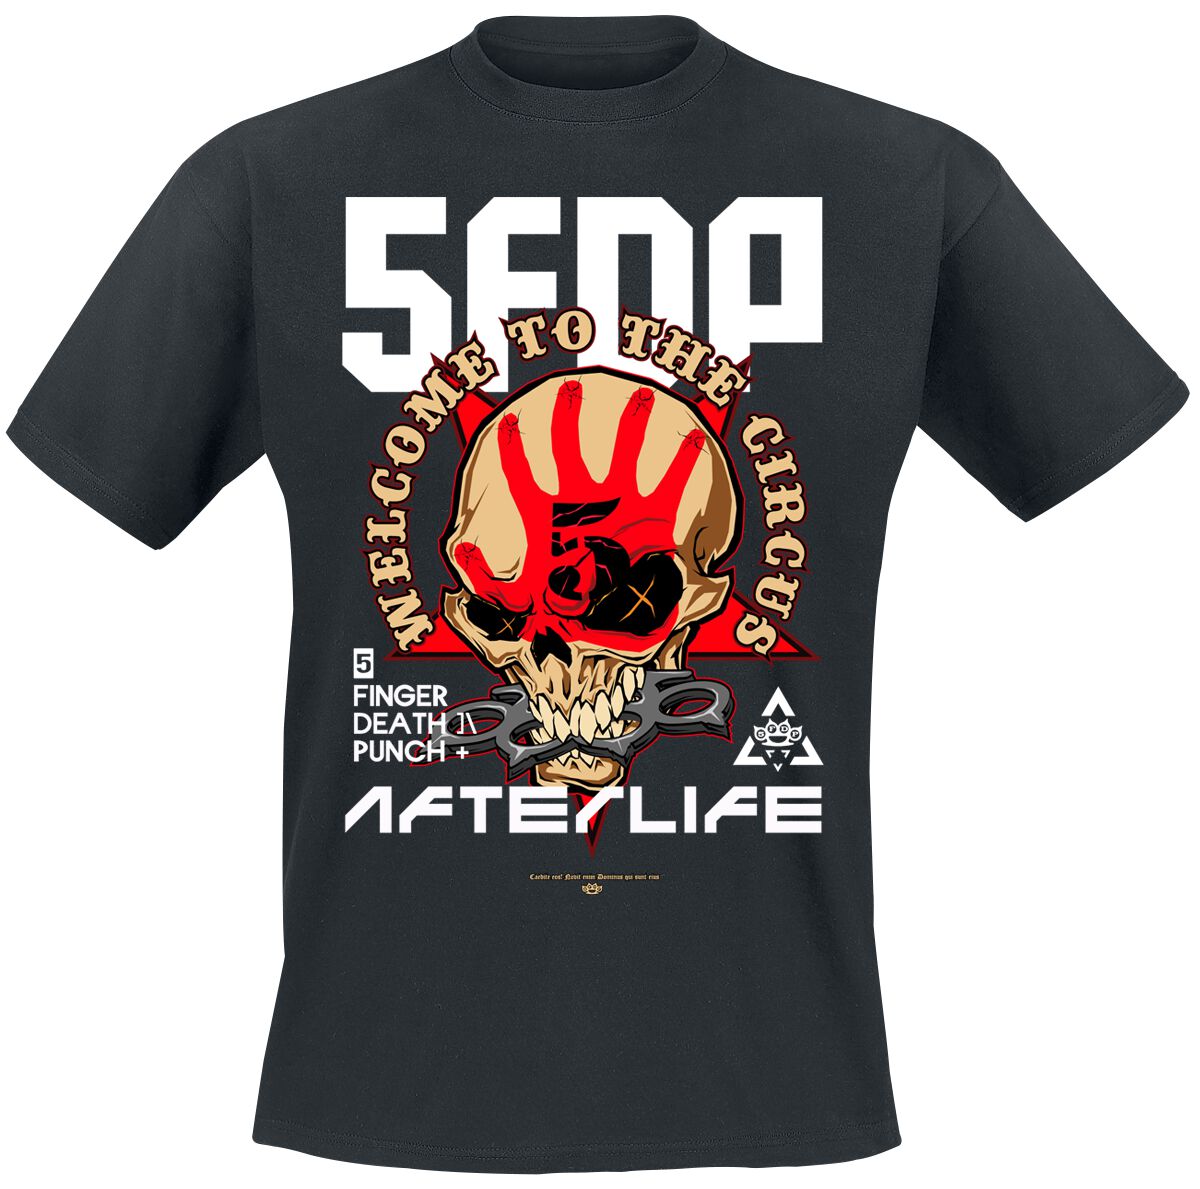 Five Finger Death Punch T-Shirt - Retro Welcome To The Circus - S bis M - für Männer - Größe M - schwarz  - Lizenziertes Merchandise!